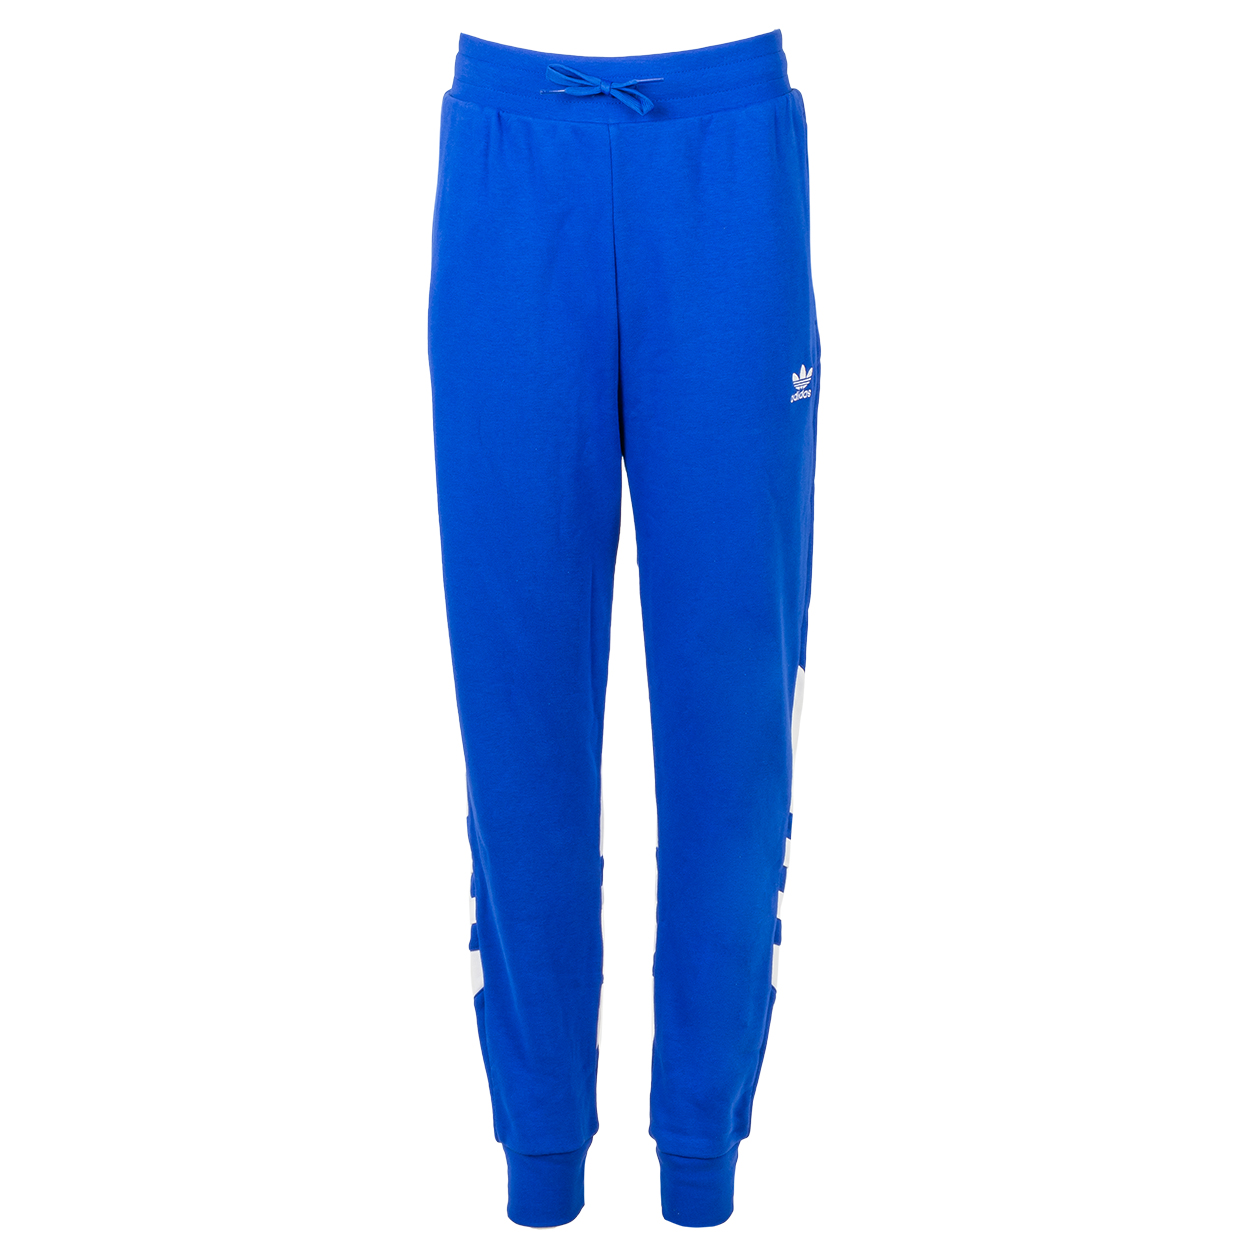 Pantalon de jogging Adidas Junior en coton mélangé bleu roi et blanc